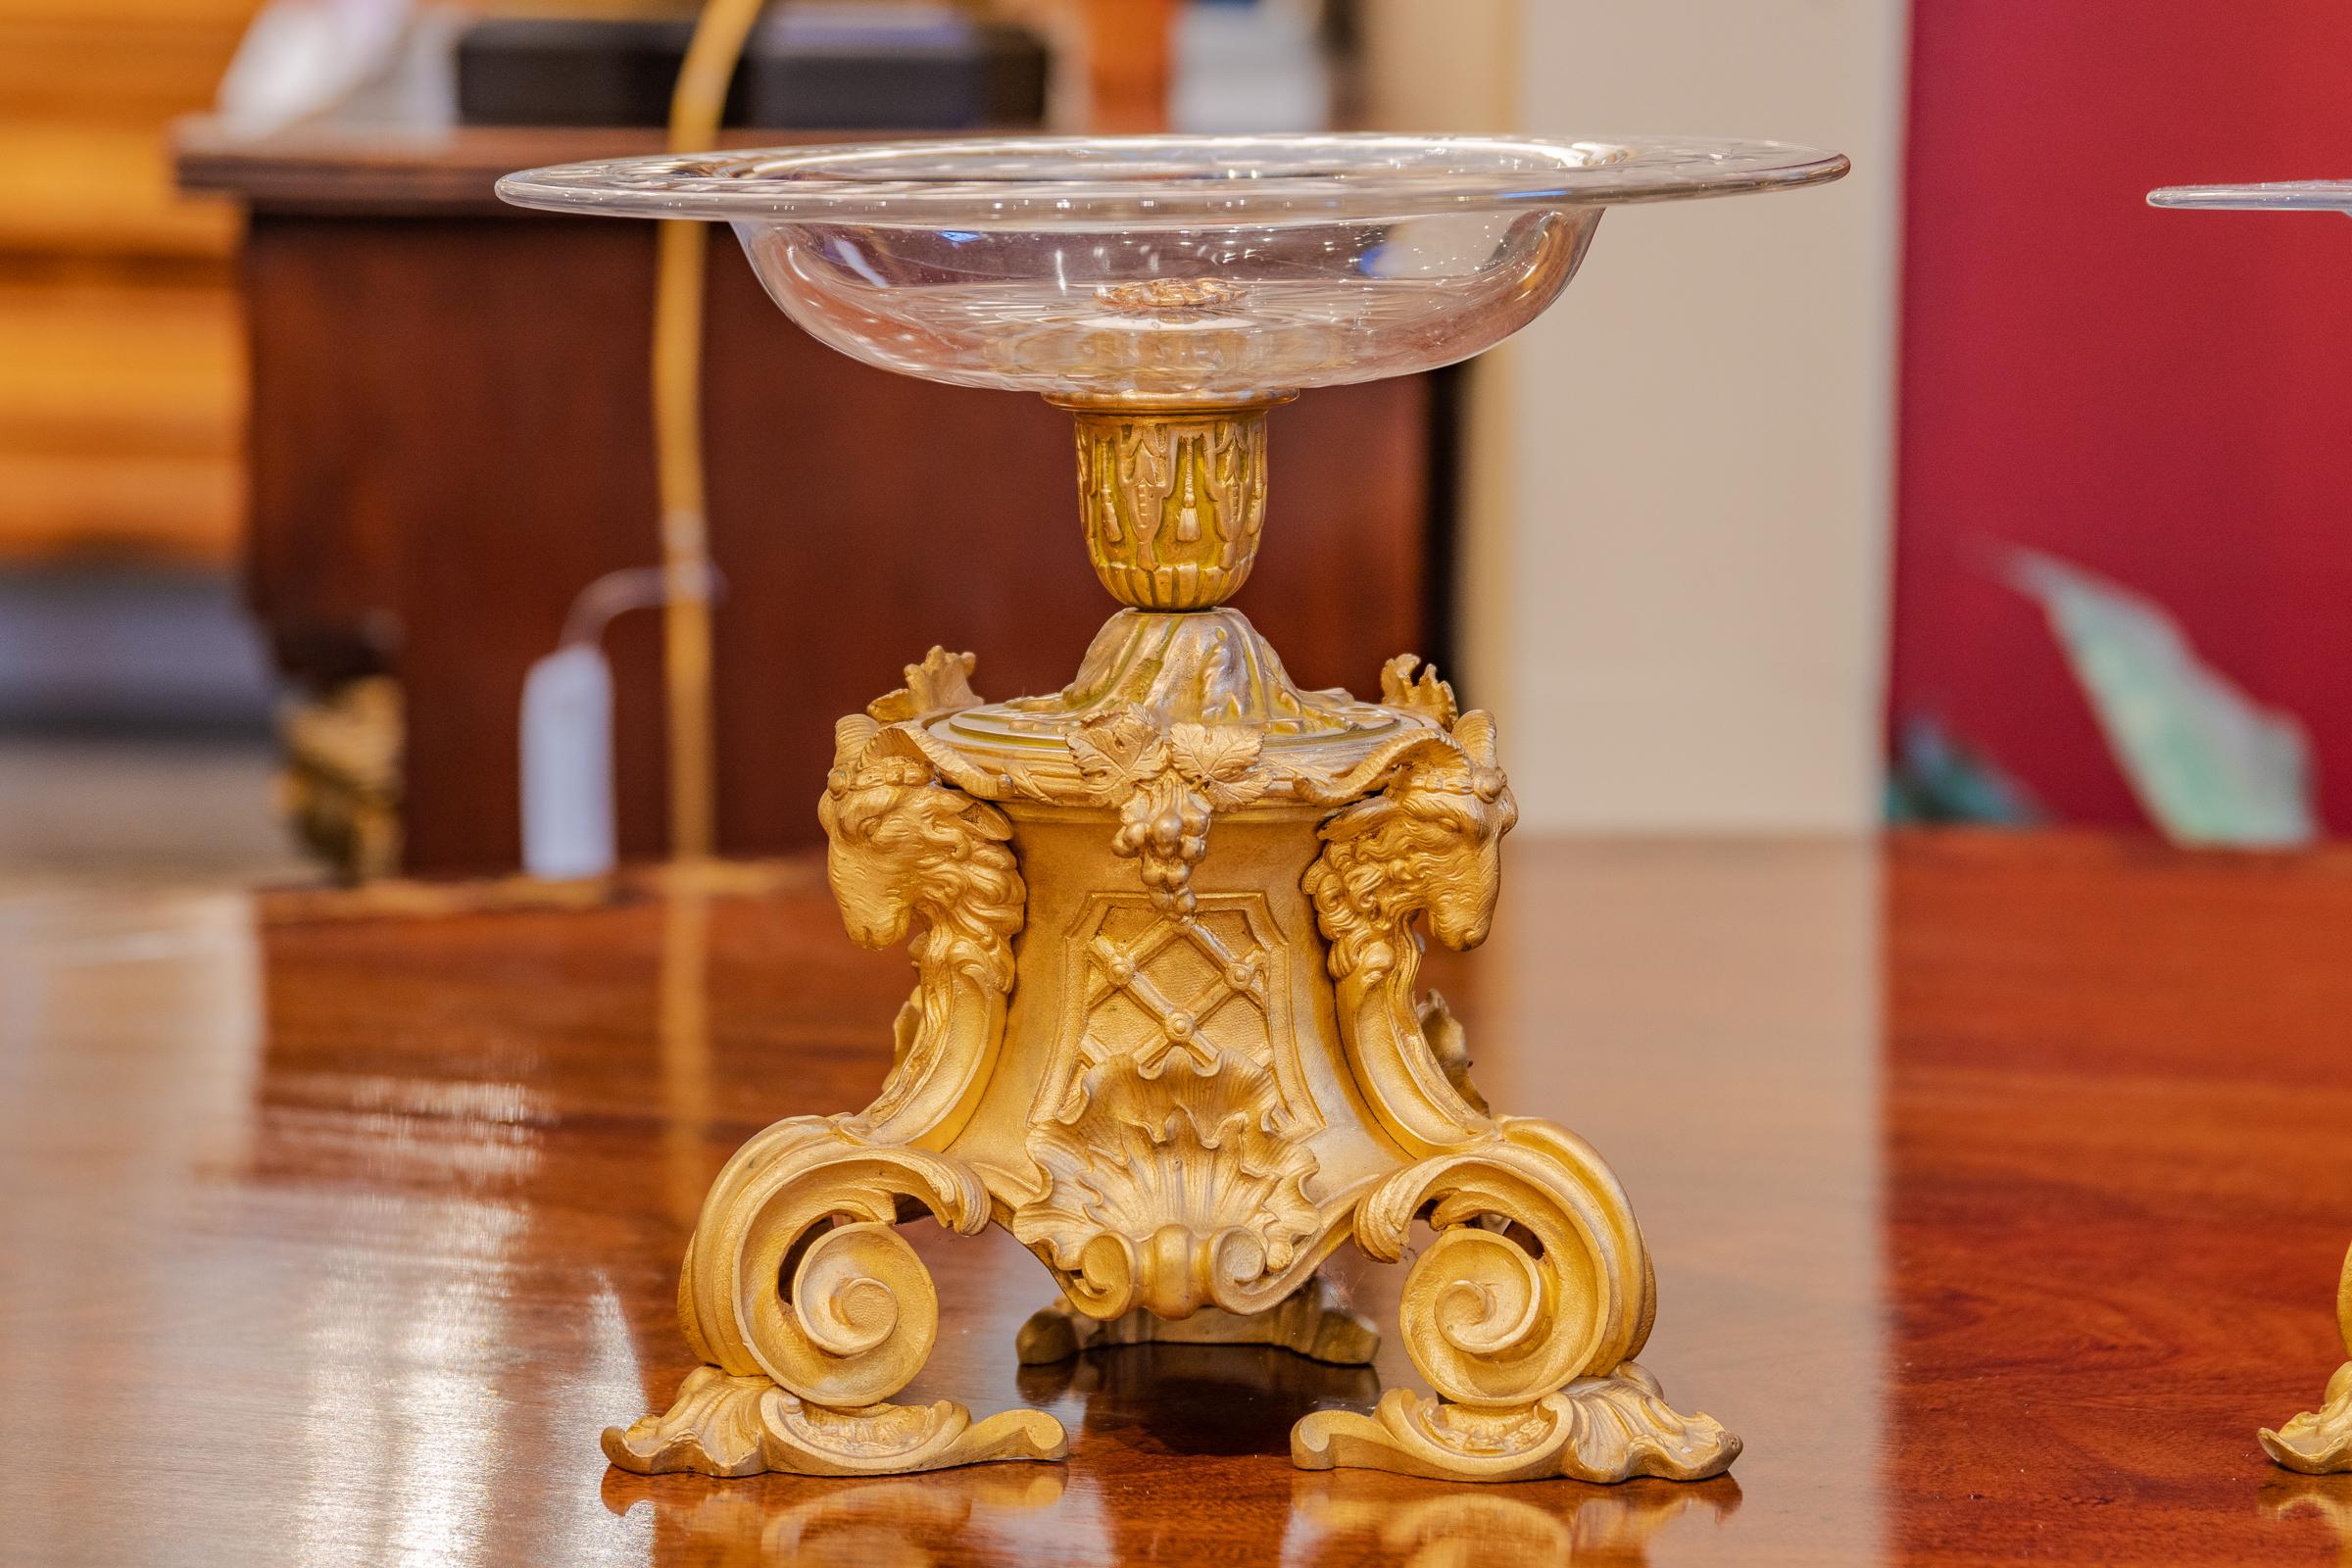 Une belle paire de bonbonnières en bronze doré et cristal du 19e siècle français.